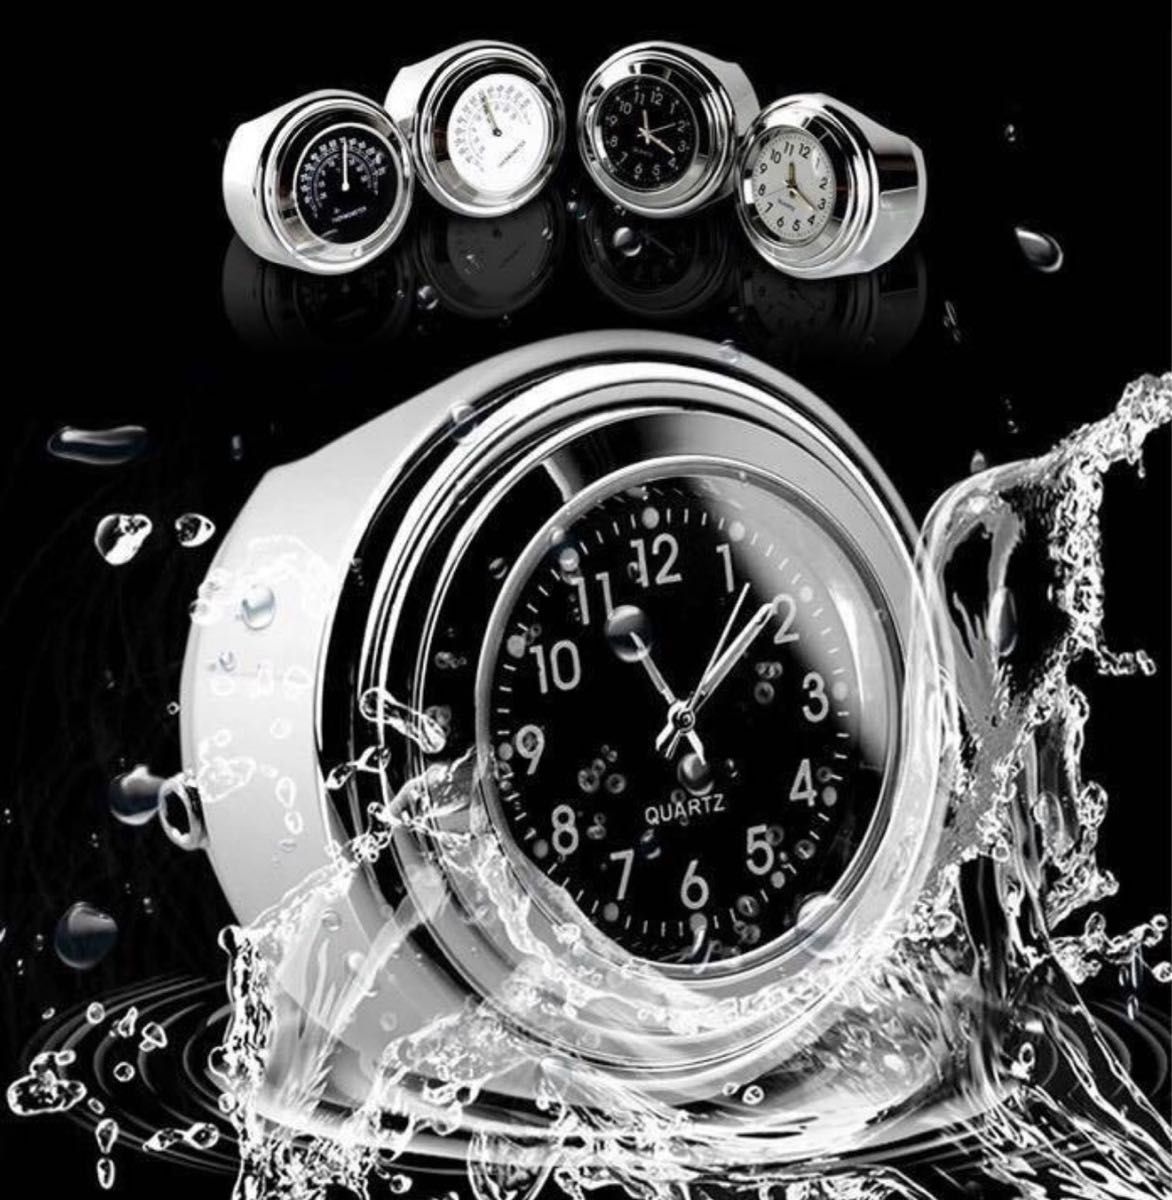 バイク 時計 黒×黒 アナログ ハンドル取付 夜光 オートバイ ウォッチ ブラック 防水 バイク オートバイ 防雨 マットブラック